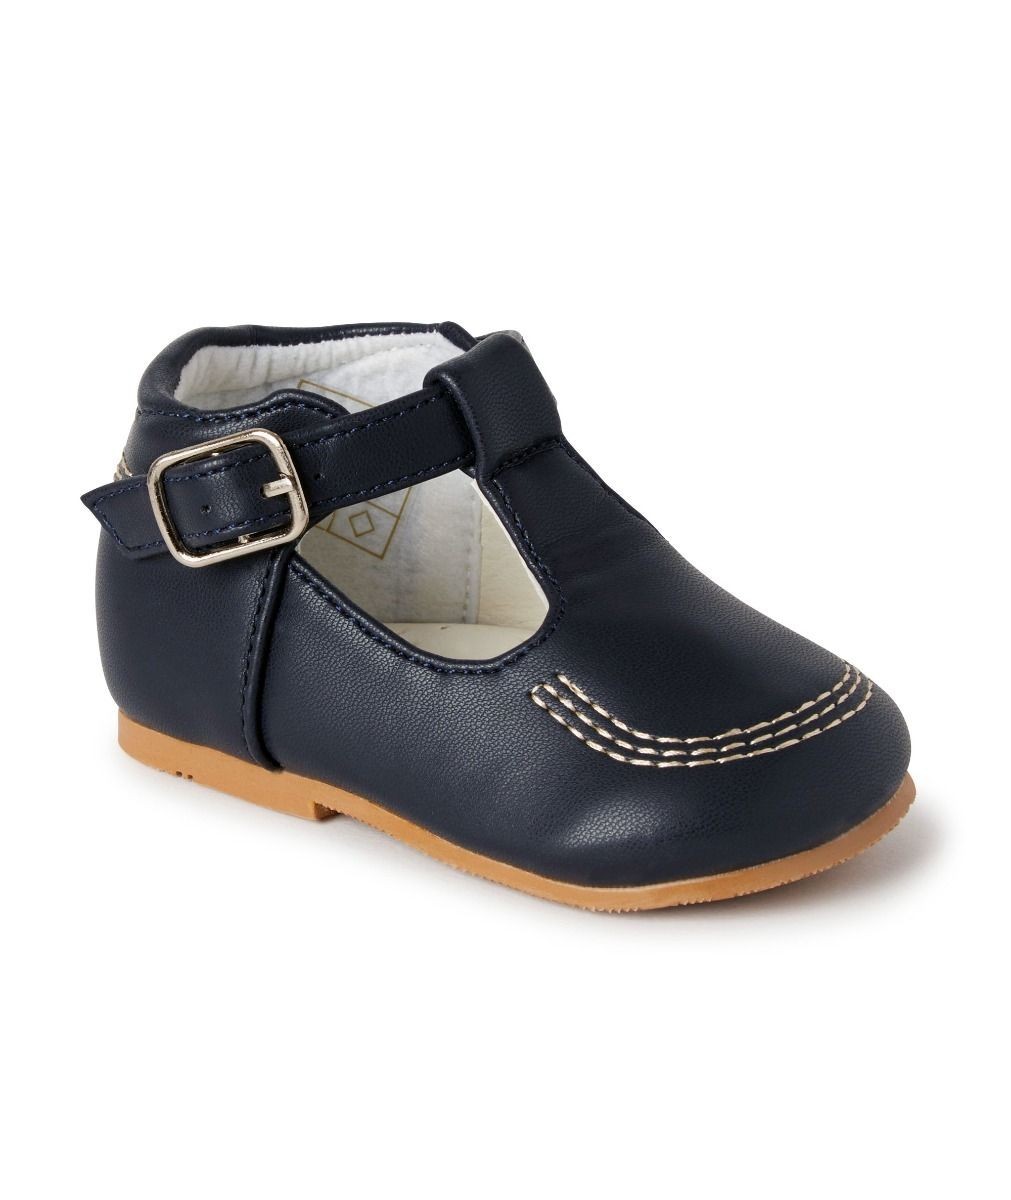 Baby- & Jungen-Schuhe mit Schnalle aus Leder – TEDDY - Navy blau